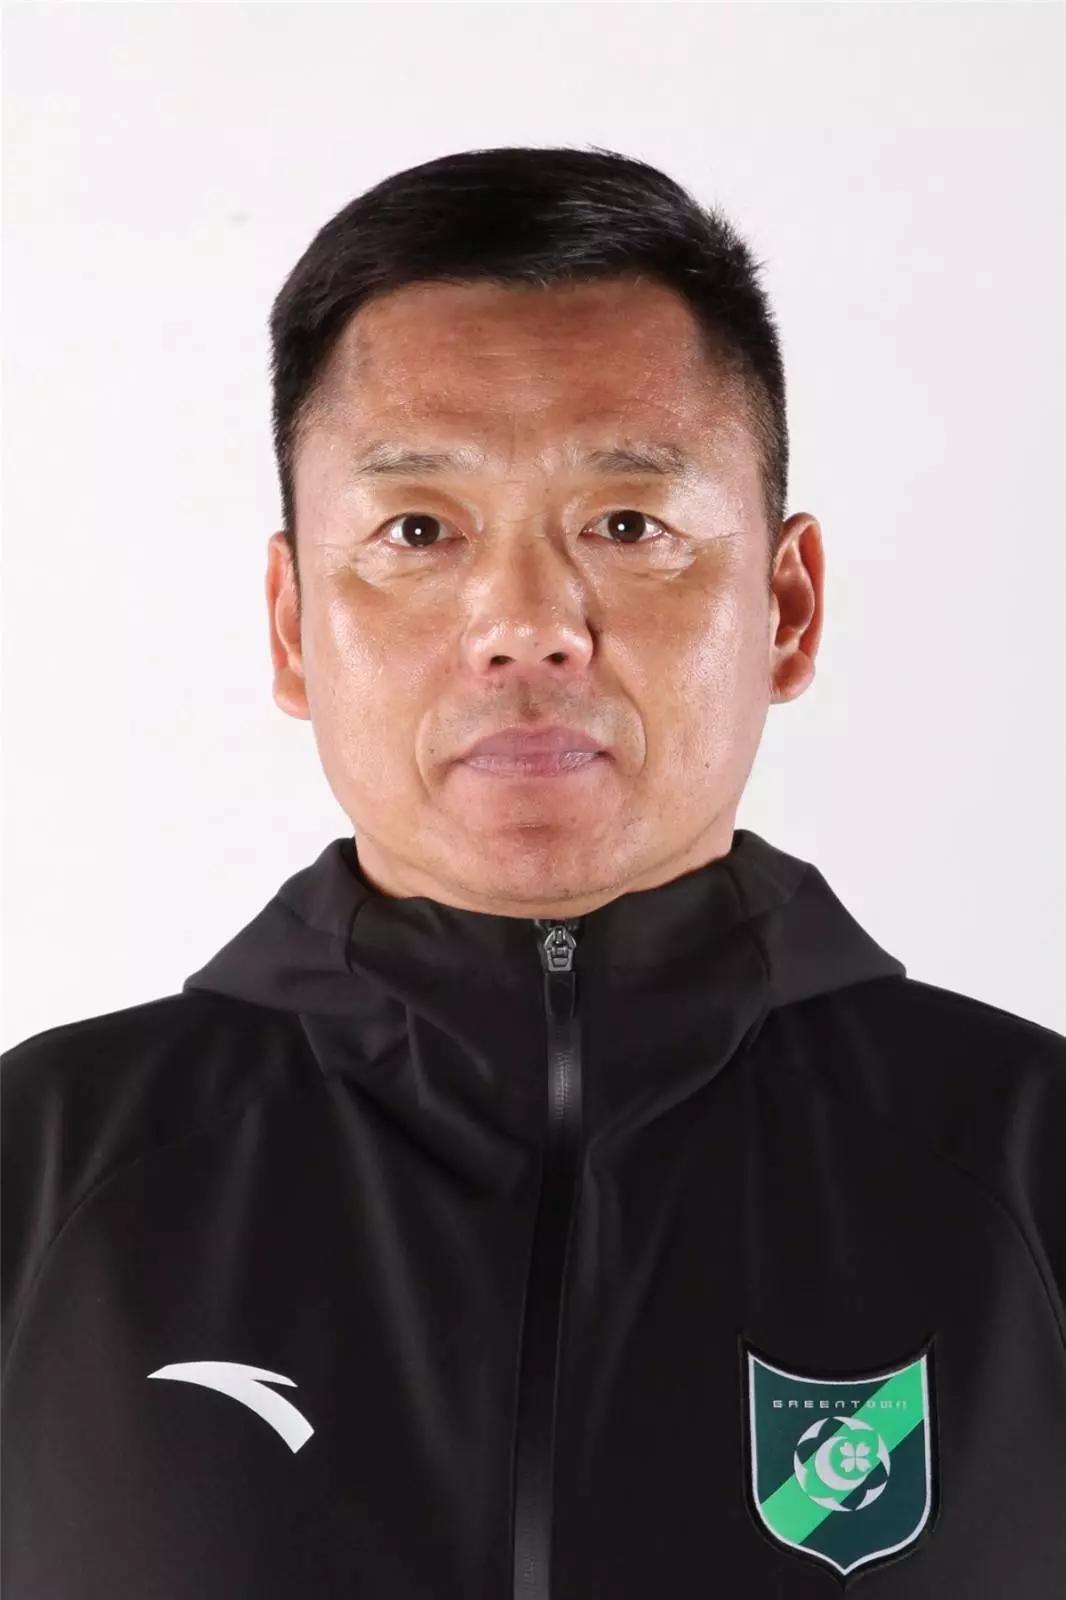 郑雄曾任前卫寰岛足球俱乐部副总经理兼领队,中国少年队(u17)主教练